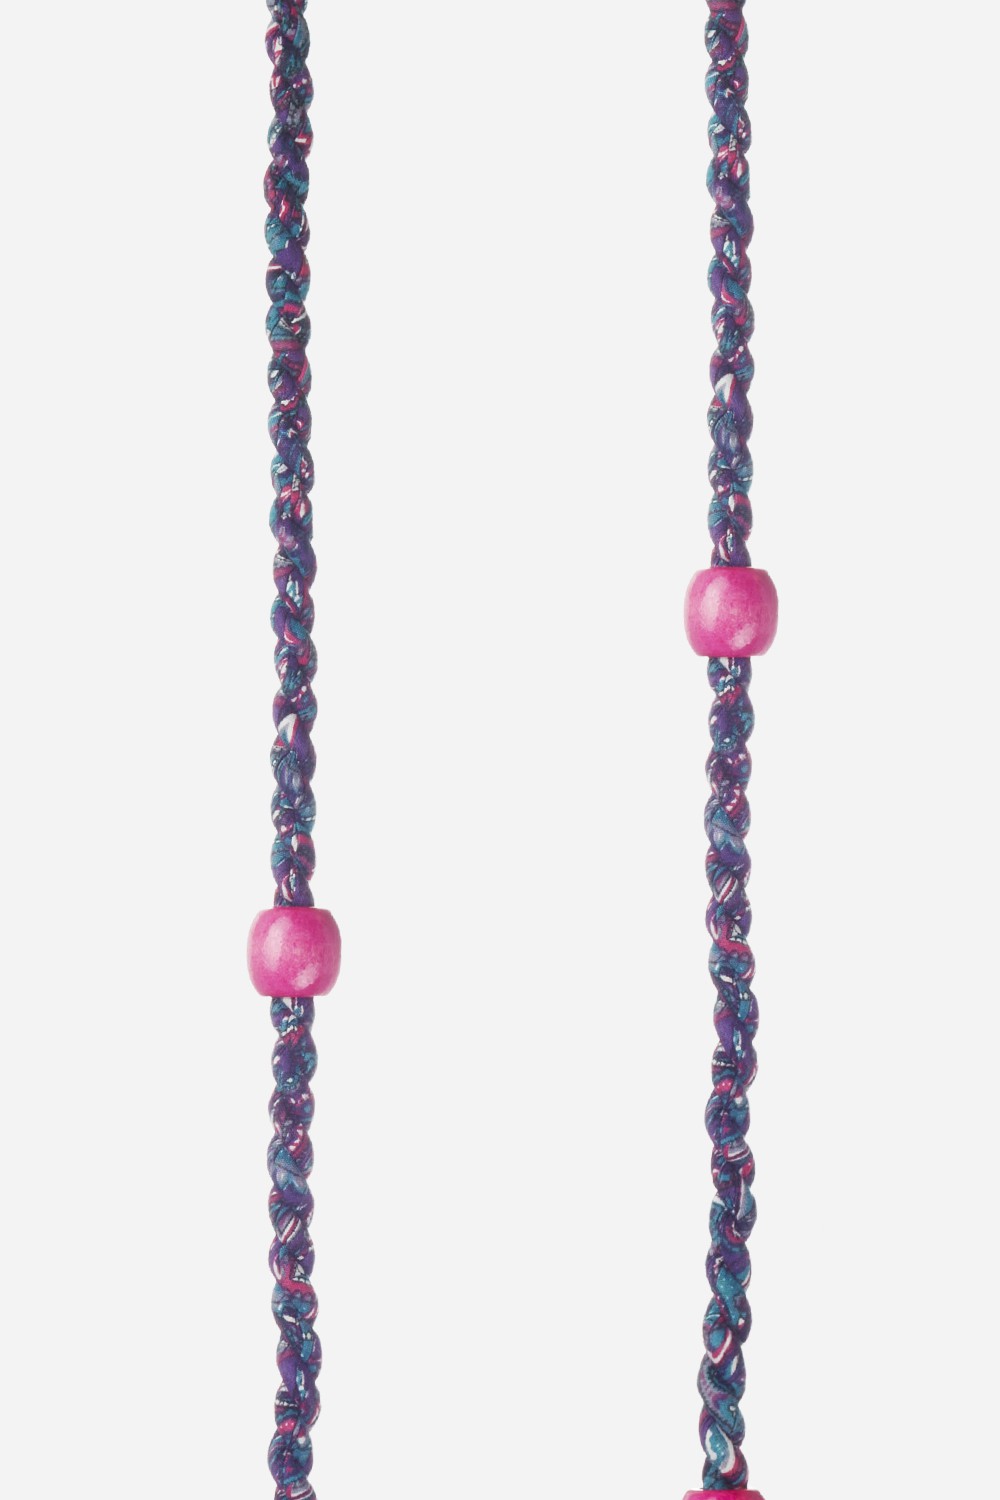 Chaine Longue Lila Violet 120 cm